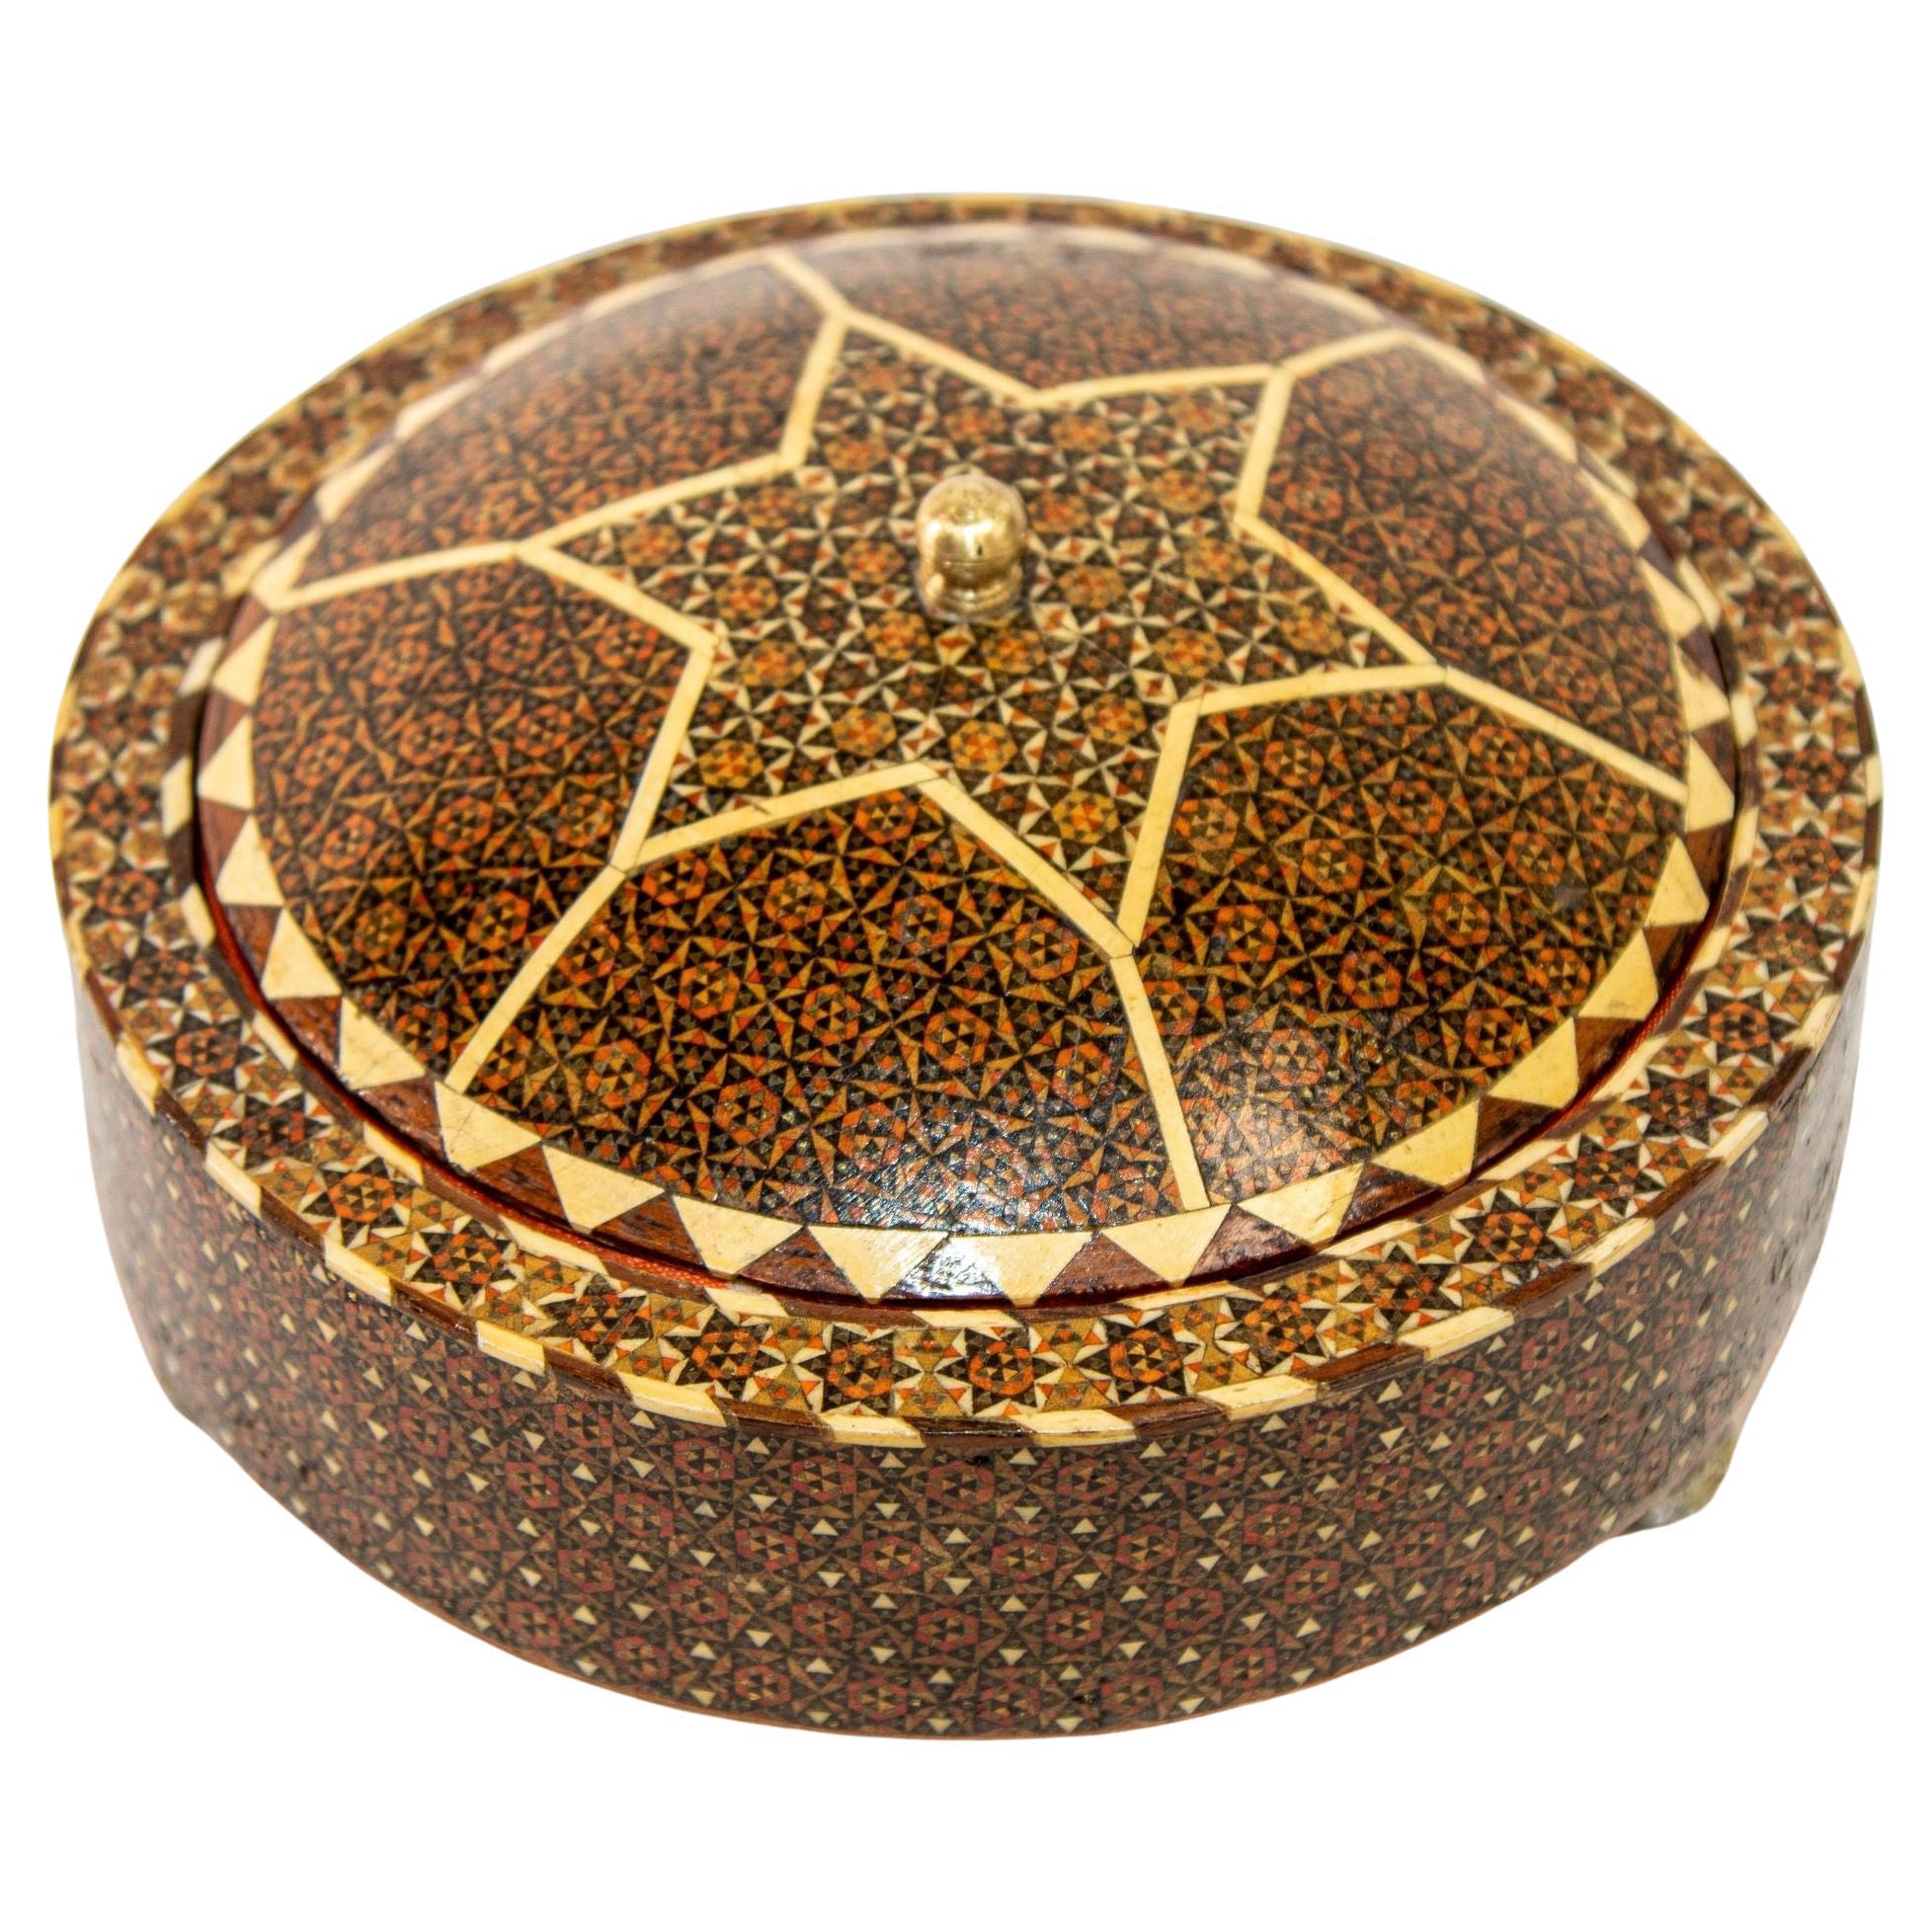 Boîte à bijoux circulaire persane Khatam Kari à pieds en bois, 1920